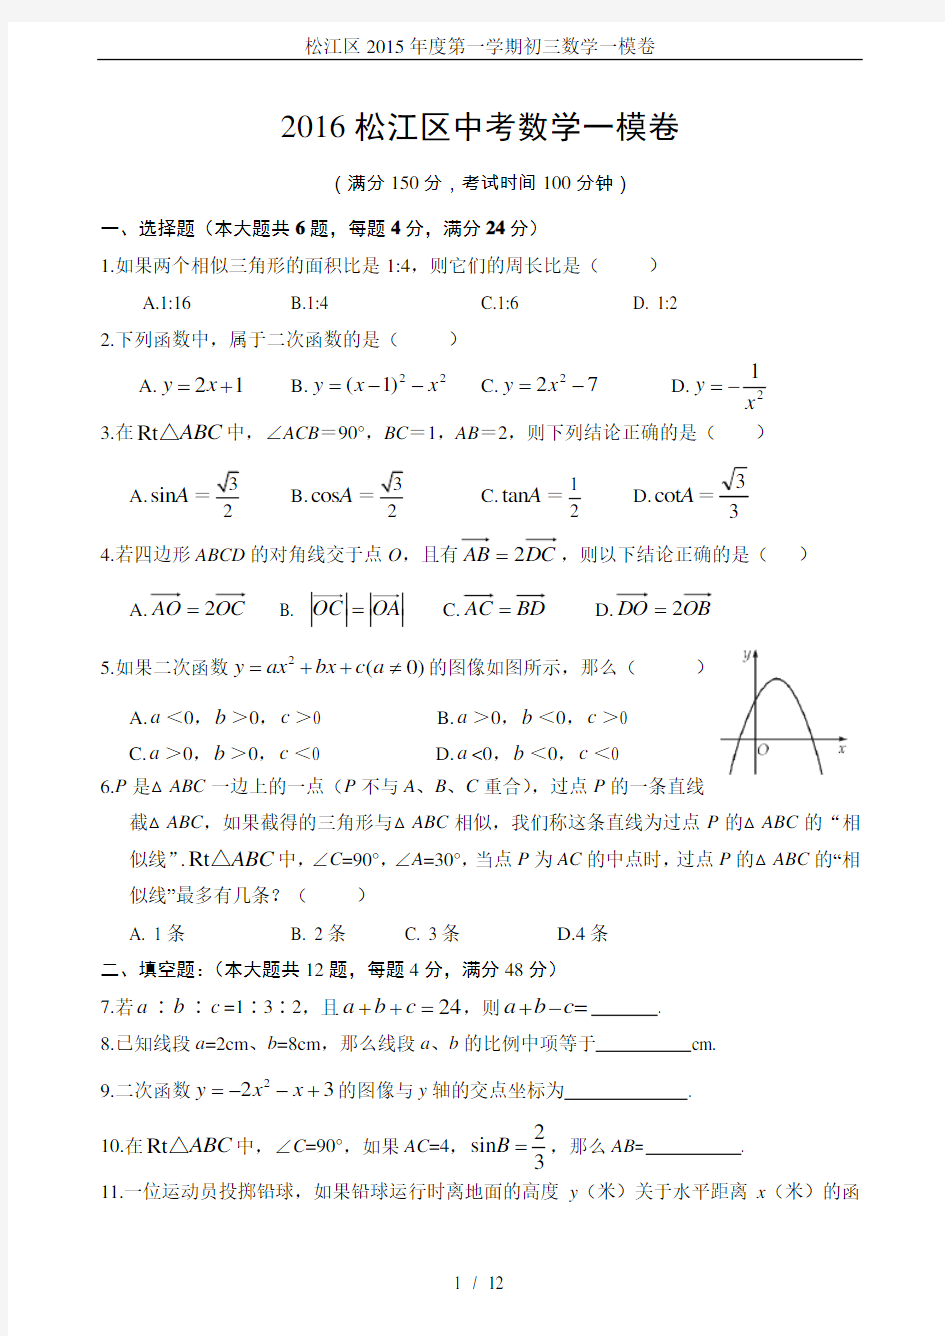 松江区2015年度第一学期初三数学一模卷